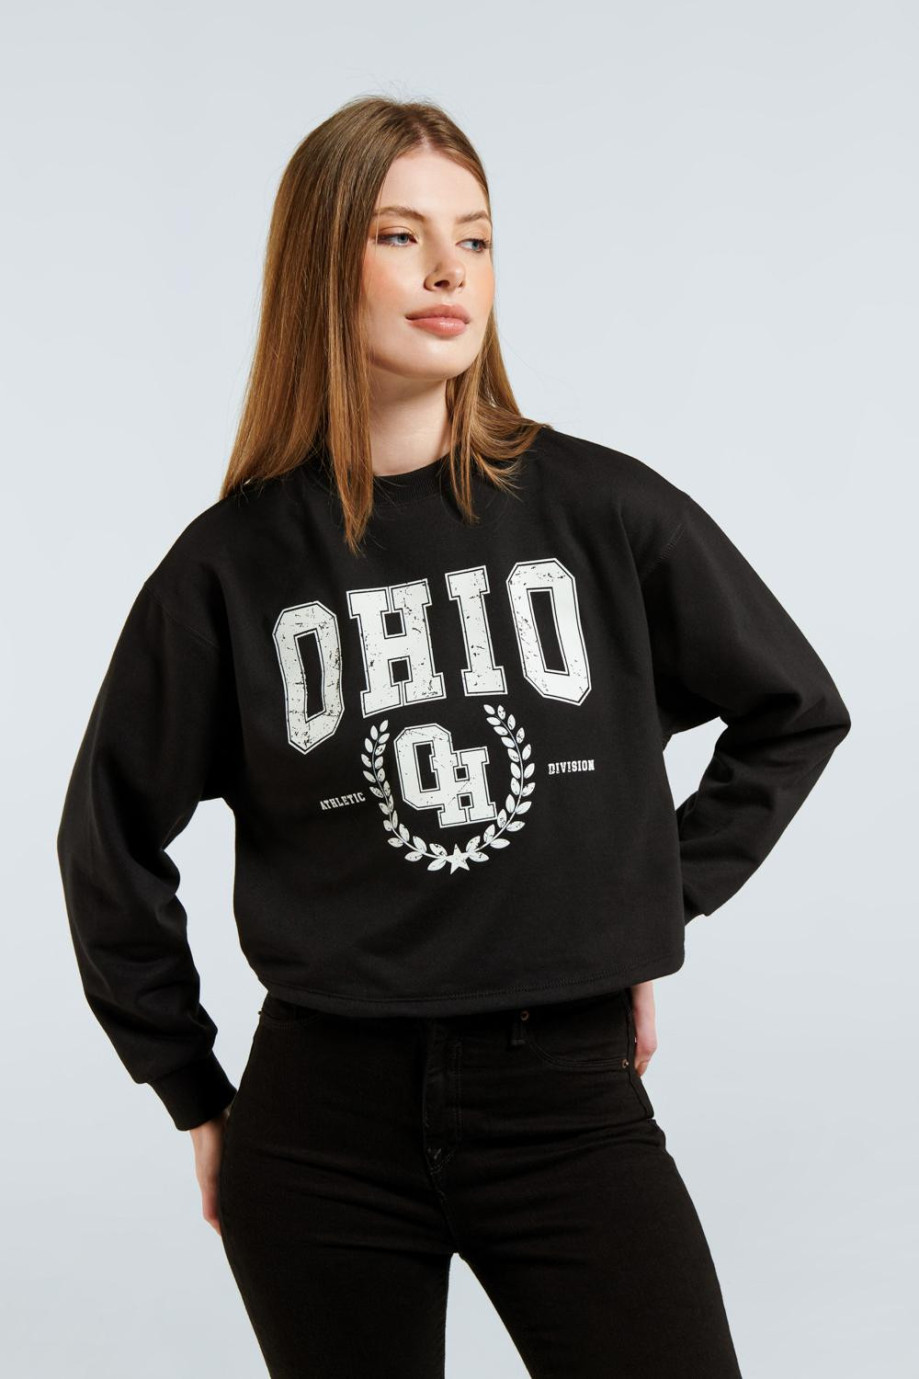 Buzo negro crop top con diseño college de Ohio